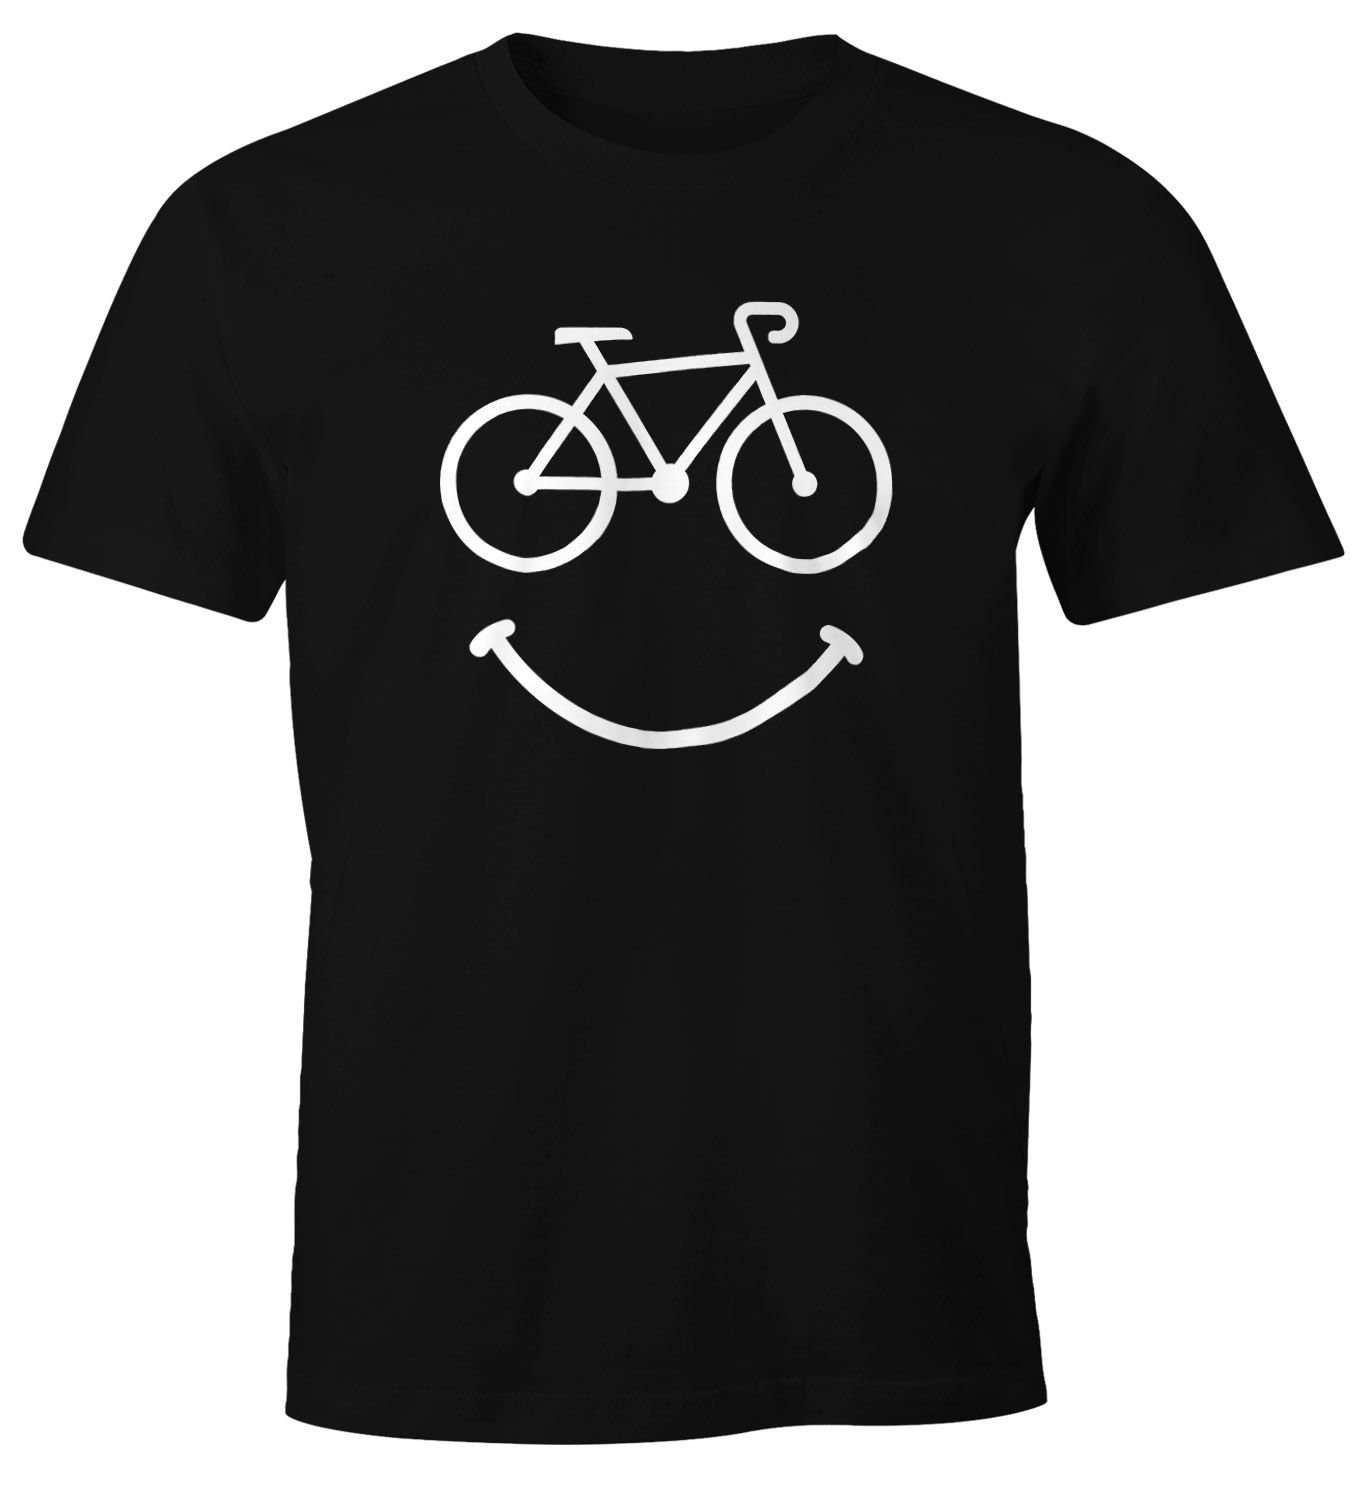 Frauen Sport Radfahren Jersey Bike Kurzarm Kleidung Fahrrad Shirts S-XL 